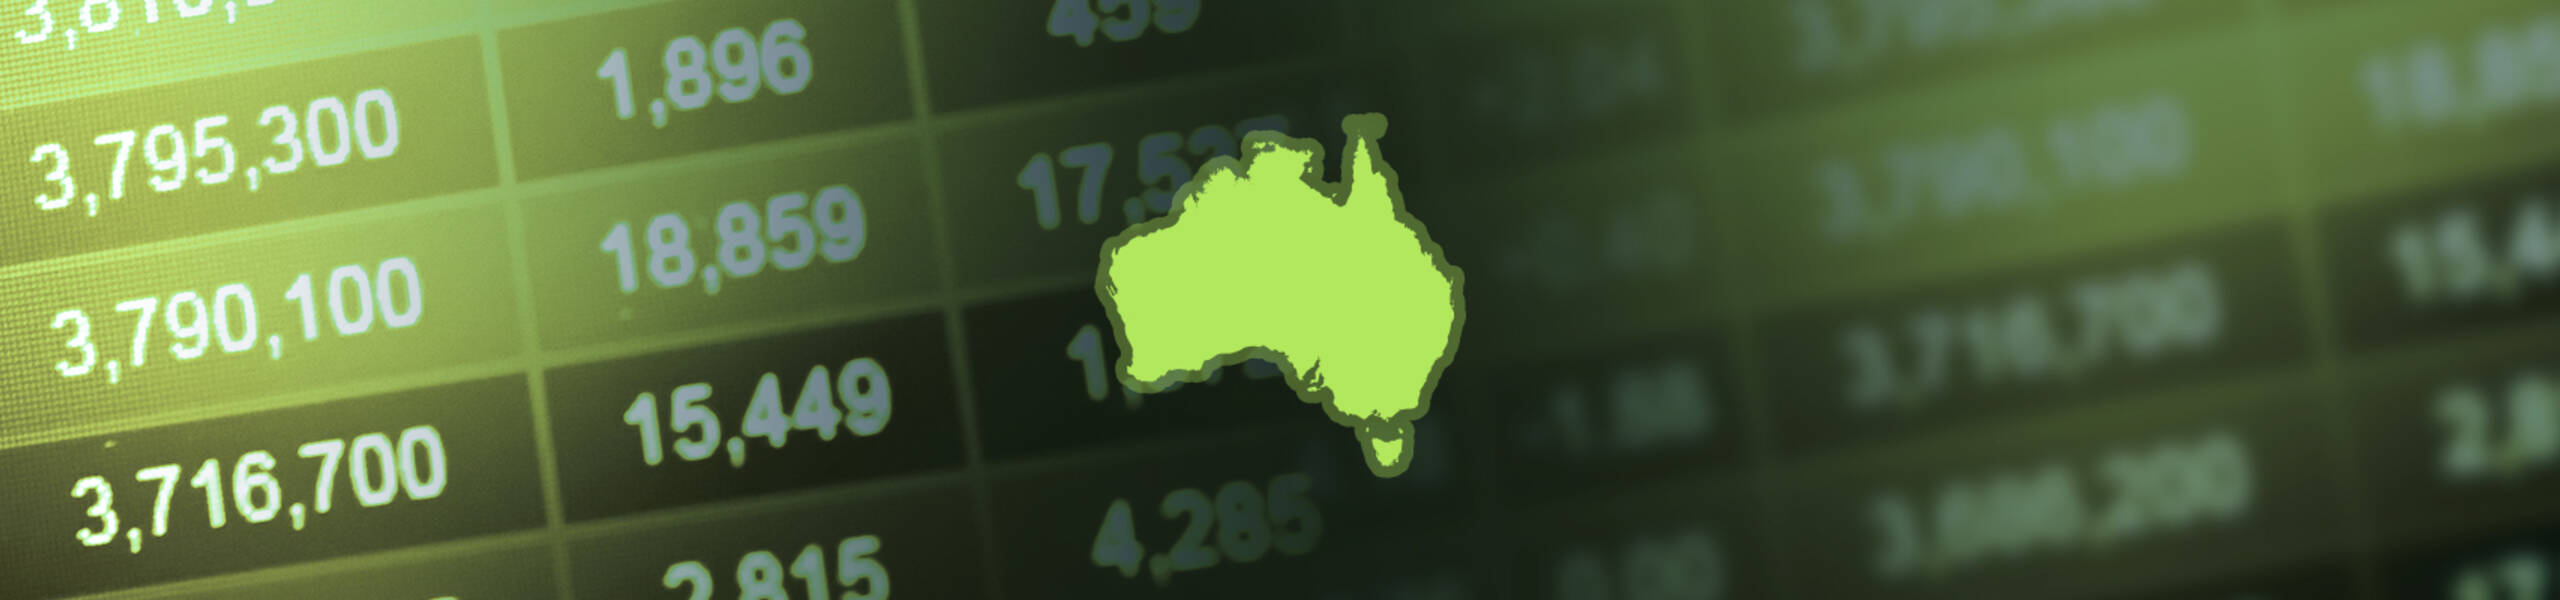 รายงานประชุมชี้แบงก์ชาติออสเตรเลียกังวลข้อพิพาทการค้าส่งผลกระทบแนวโน้มเศรษฐกิจโลก